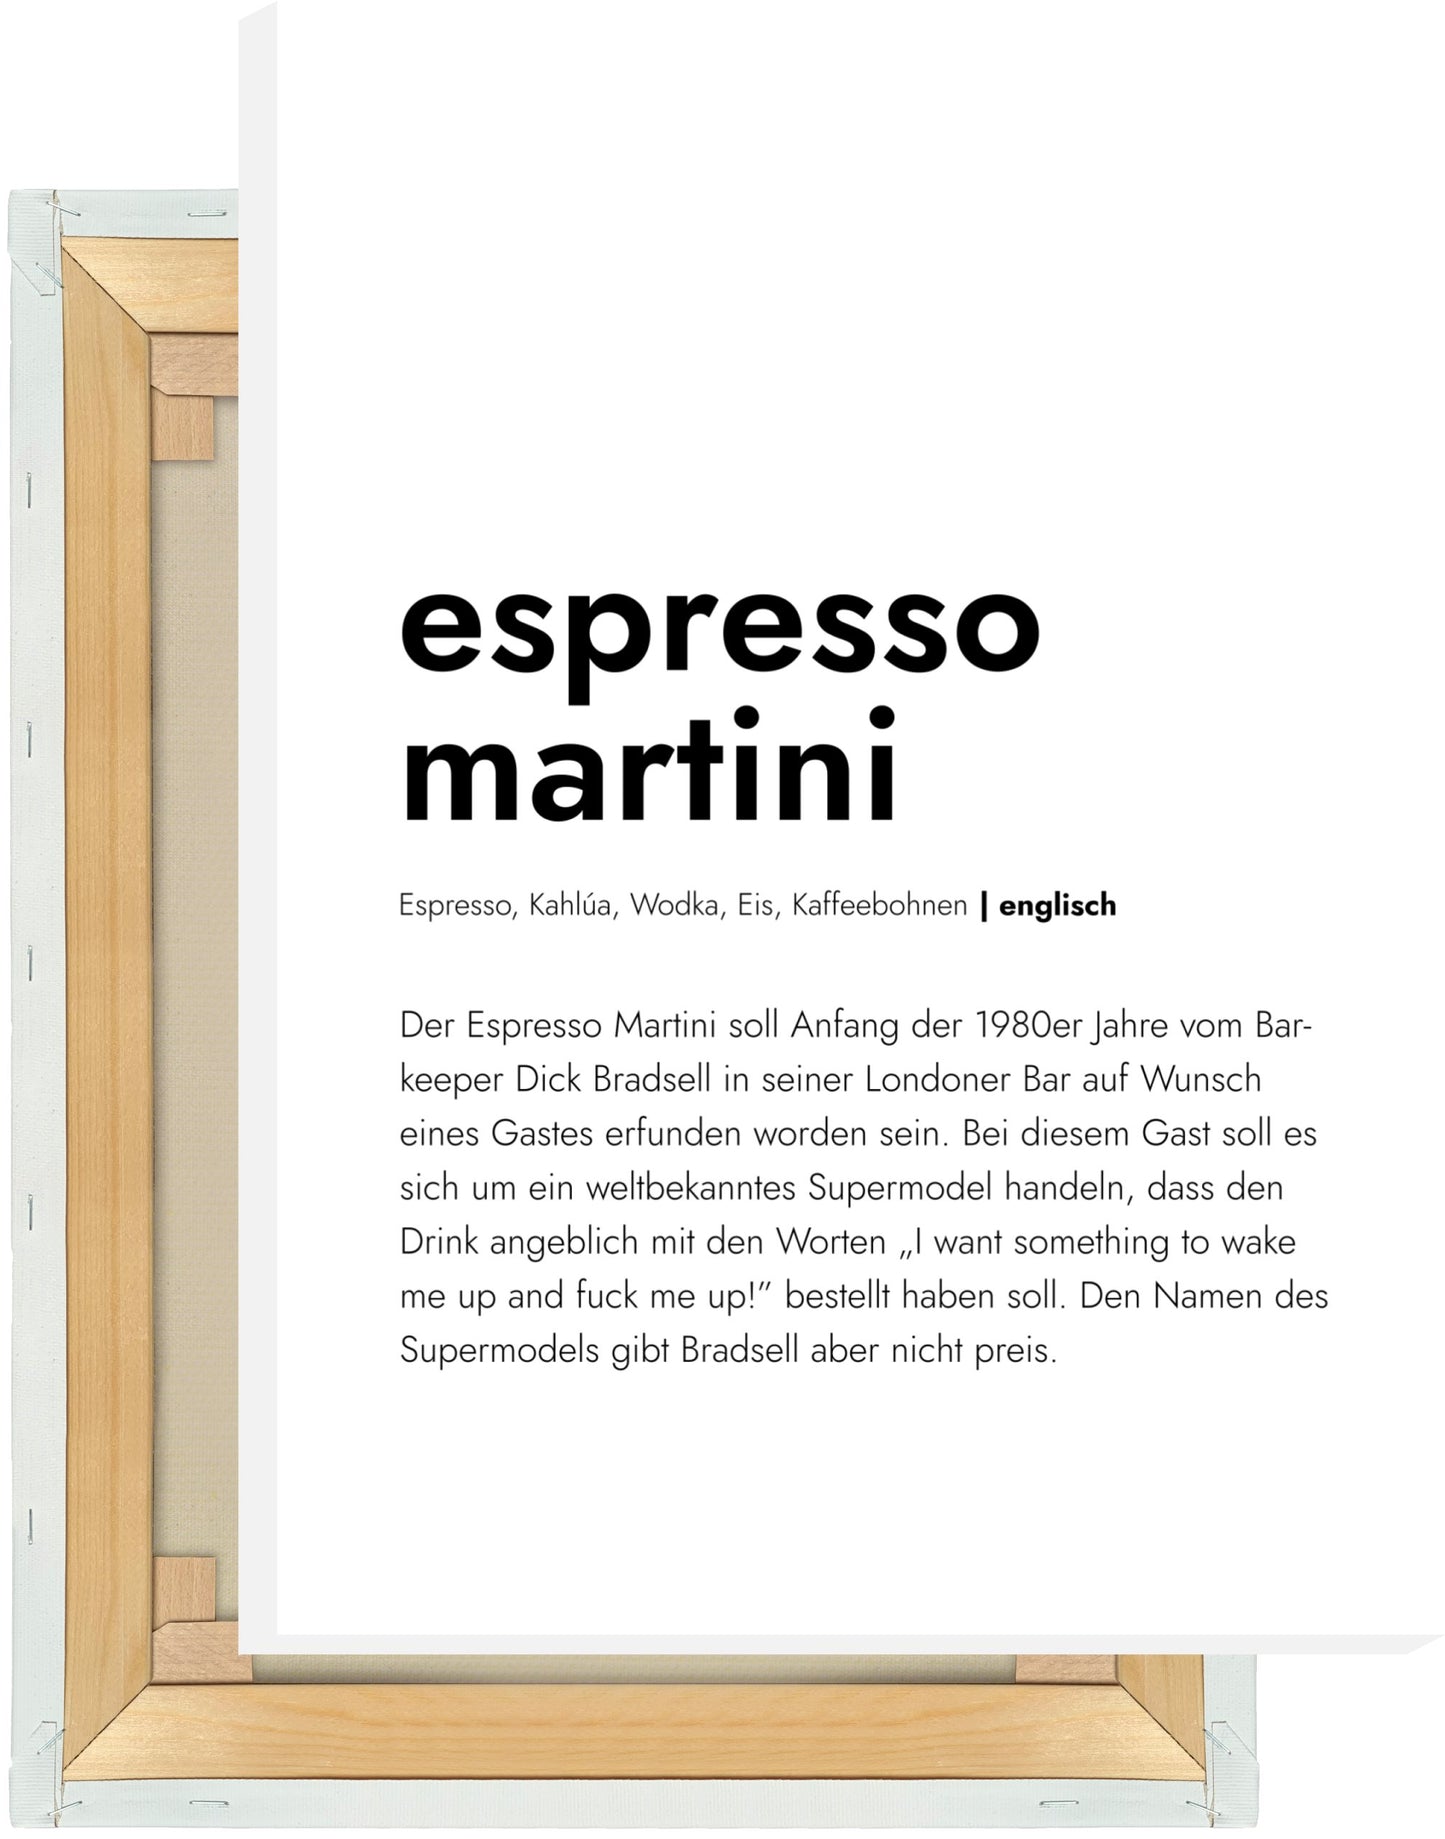 Leinwand Espresso Martini - Definition